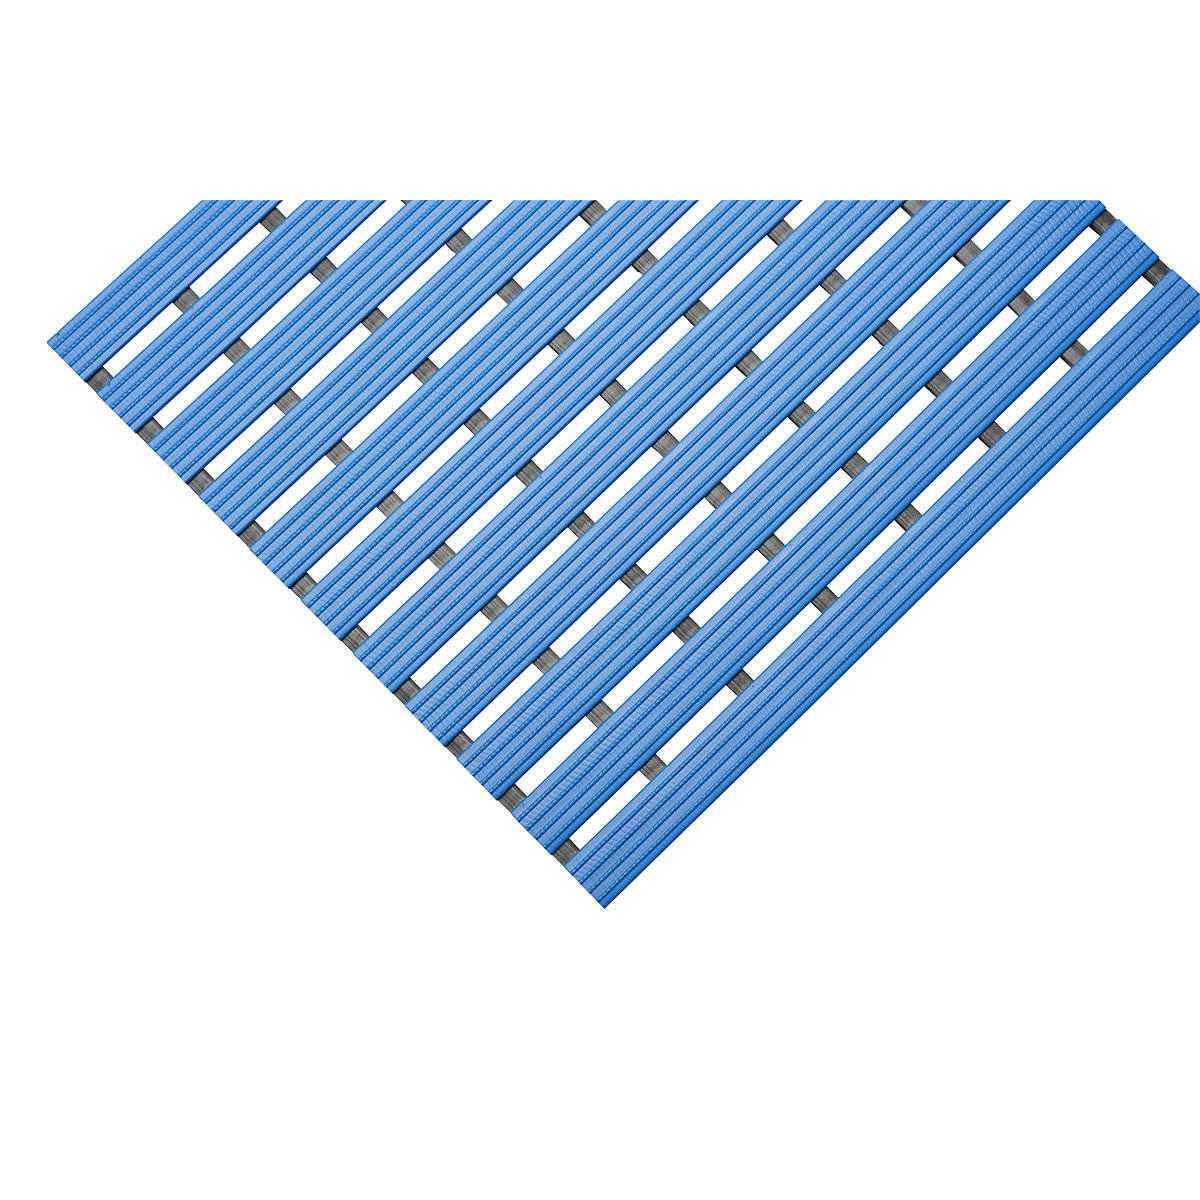 Esteira de perfil em PVC, por metro corrente, superfície de movimento em PVC duro, antiderrapante, largura 600 mm, azul